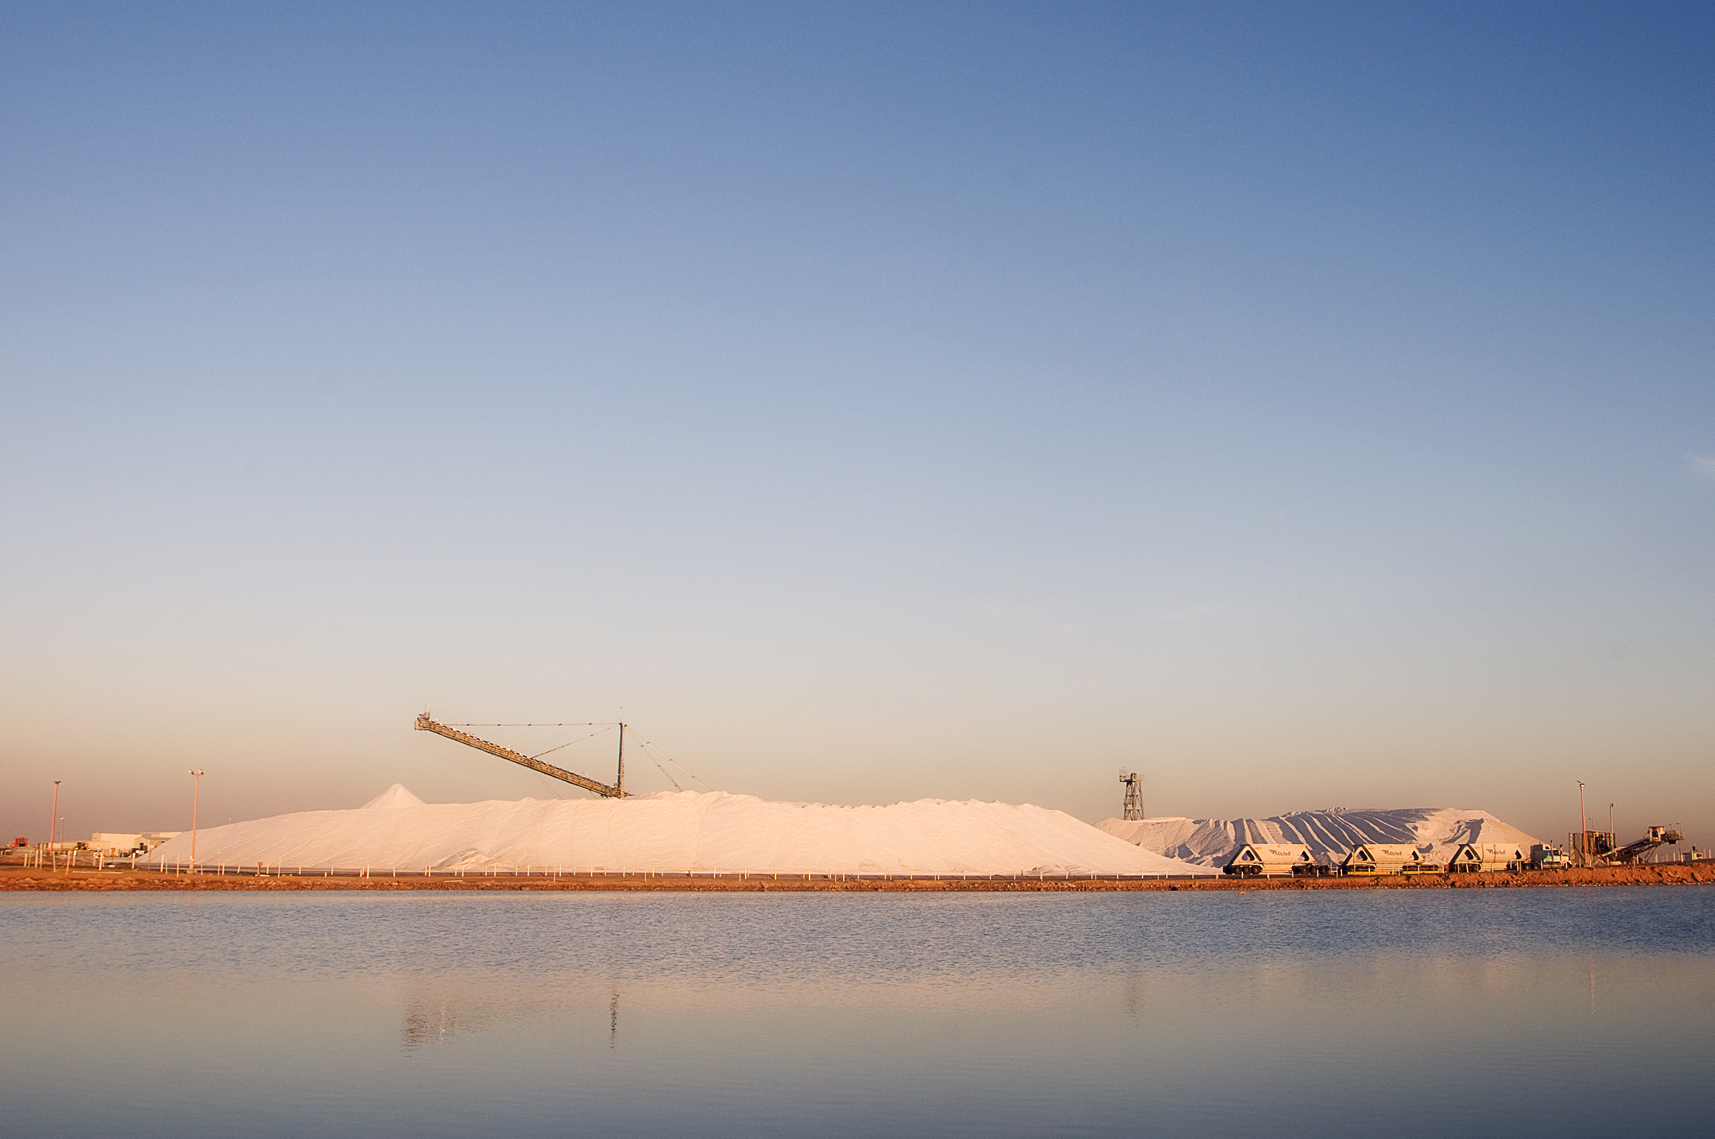 Salt mine, western Australia